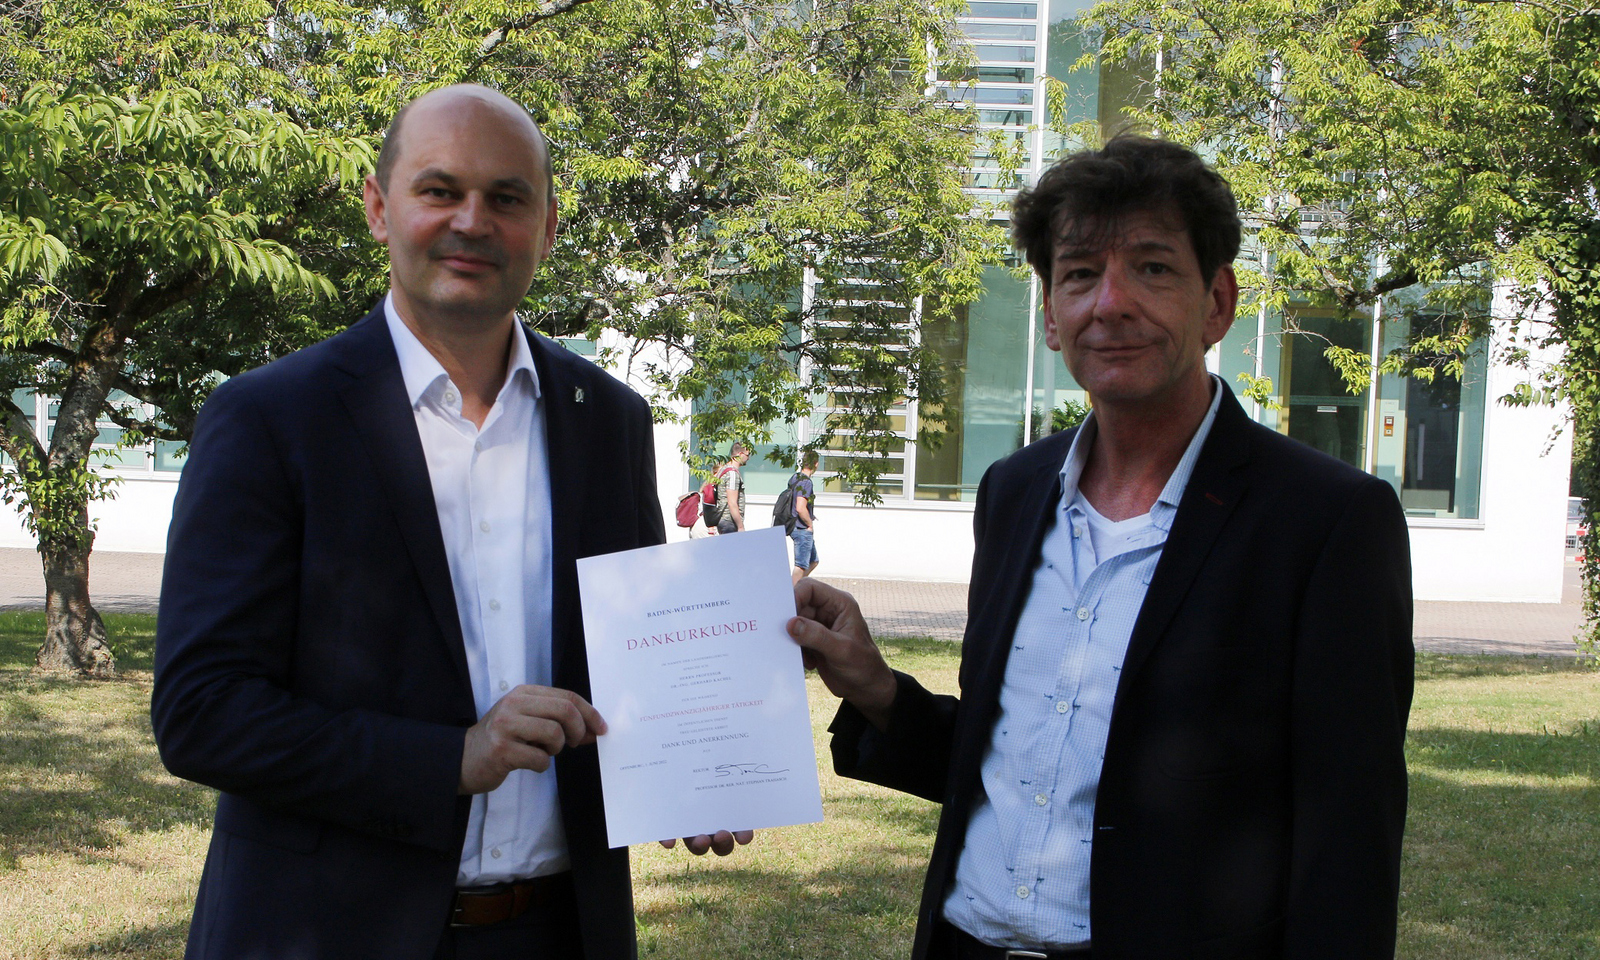 Rektor Prof. Dr. Stephan Trahasch (links) und Prof. Dr. Gerhard Kachel (rechts) stehen bei der Urkundenübergabe auf dem Campus unter Bäumen.